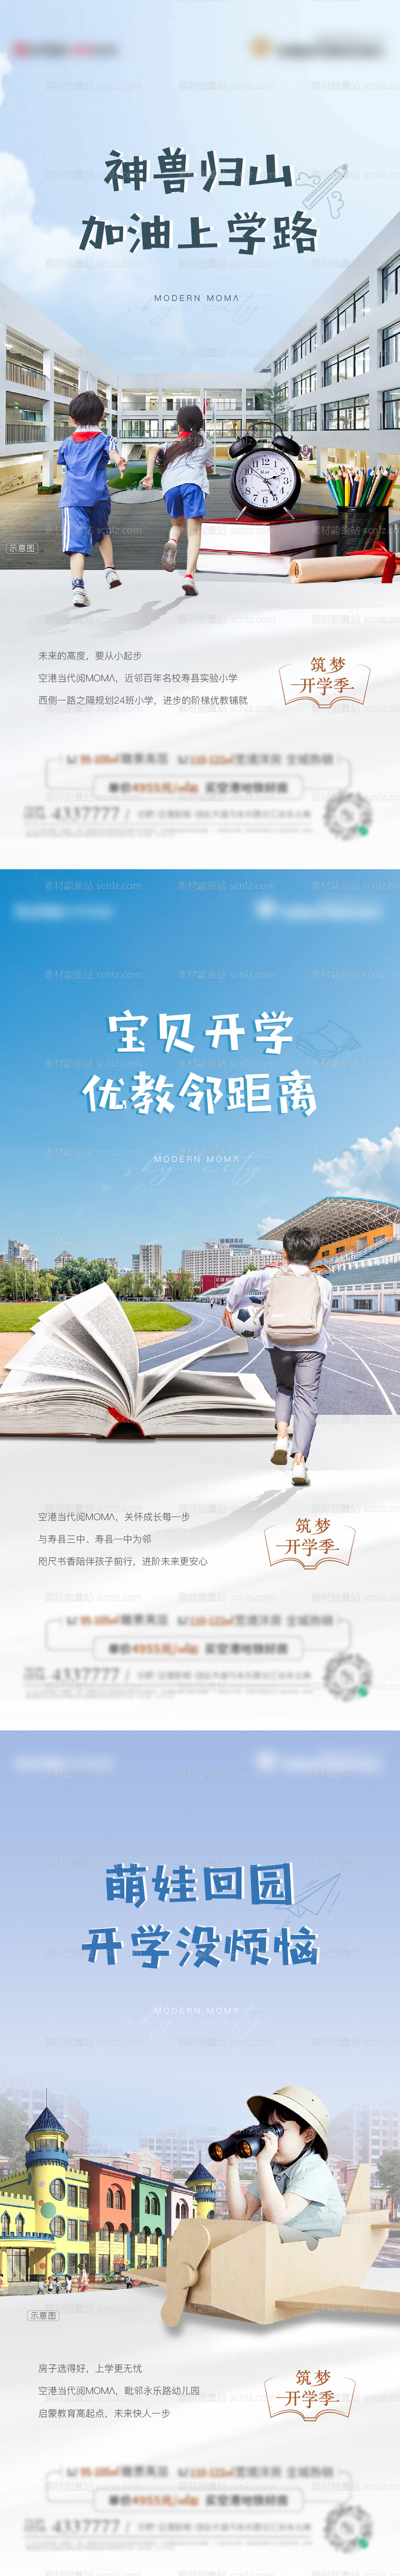 素材能量站-地产开学季学校价值系列海报